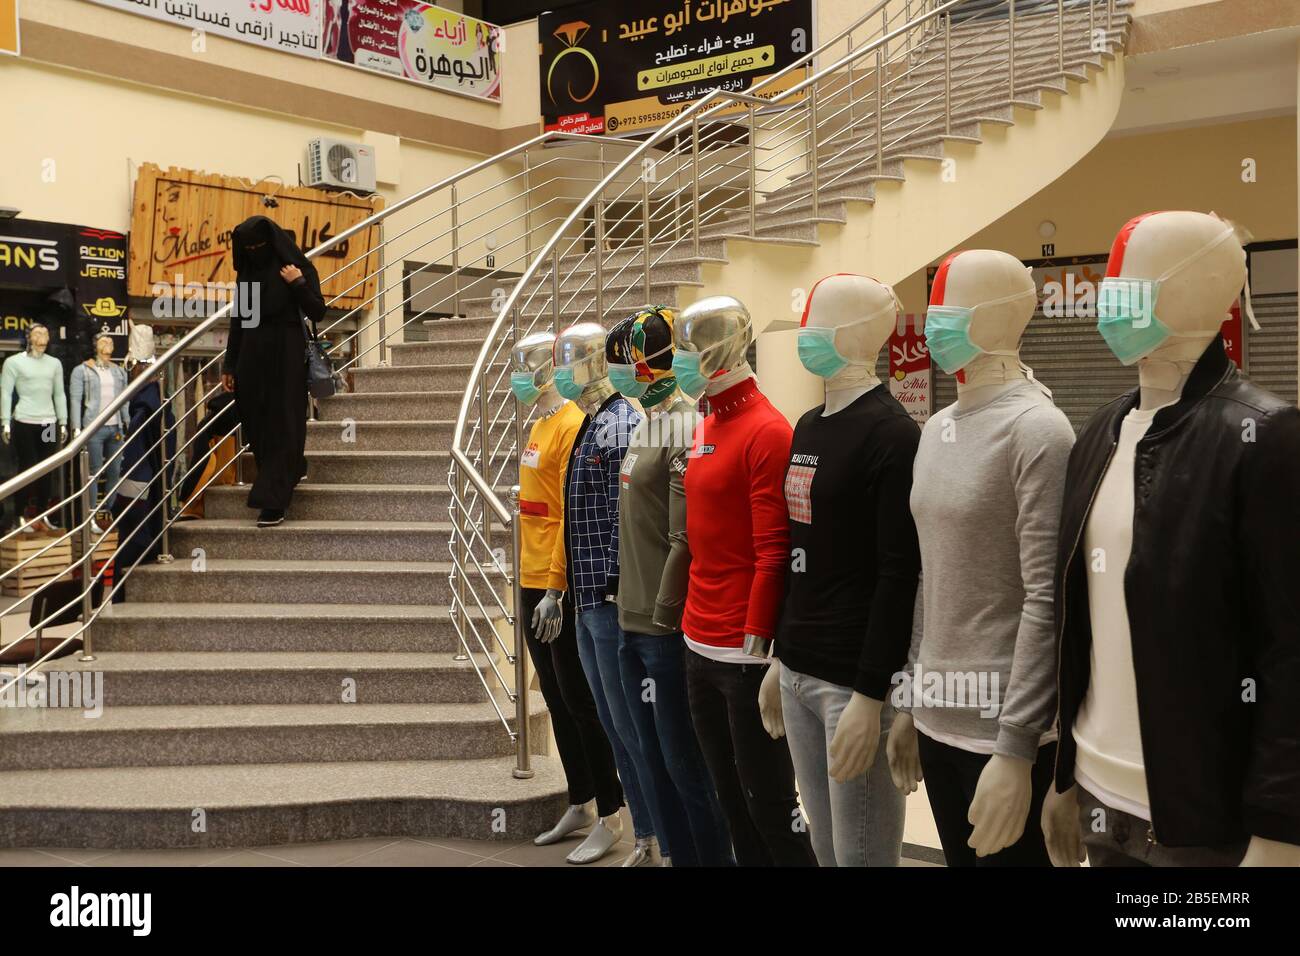 El 8 de marzo de 2020, se exhibió maniquíes con máscaras faciales fuera de una tienda de ropa, en la Franja de Gaza, para difundir la conciencia sobre la enfermedad coronavirus COVID-19, Foto de stock